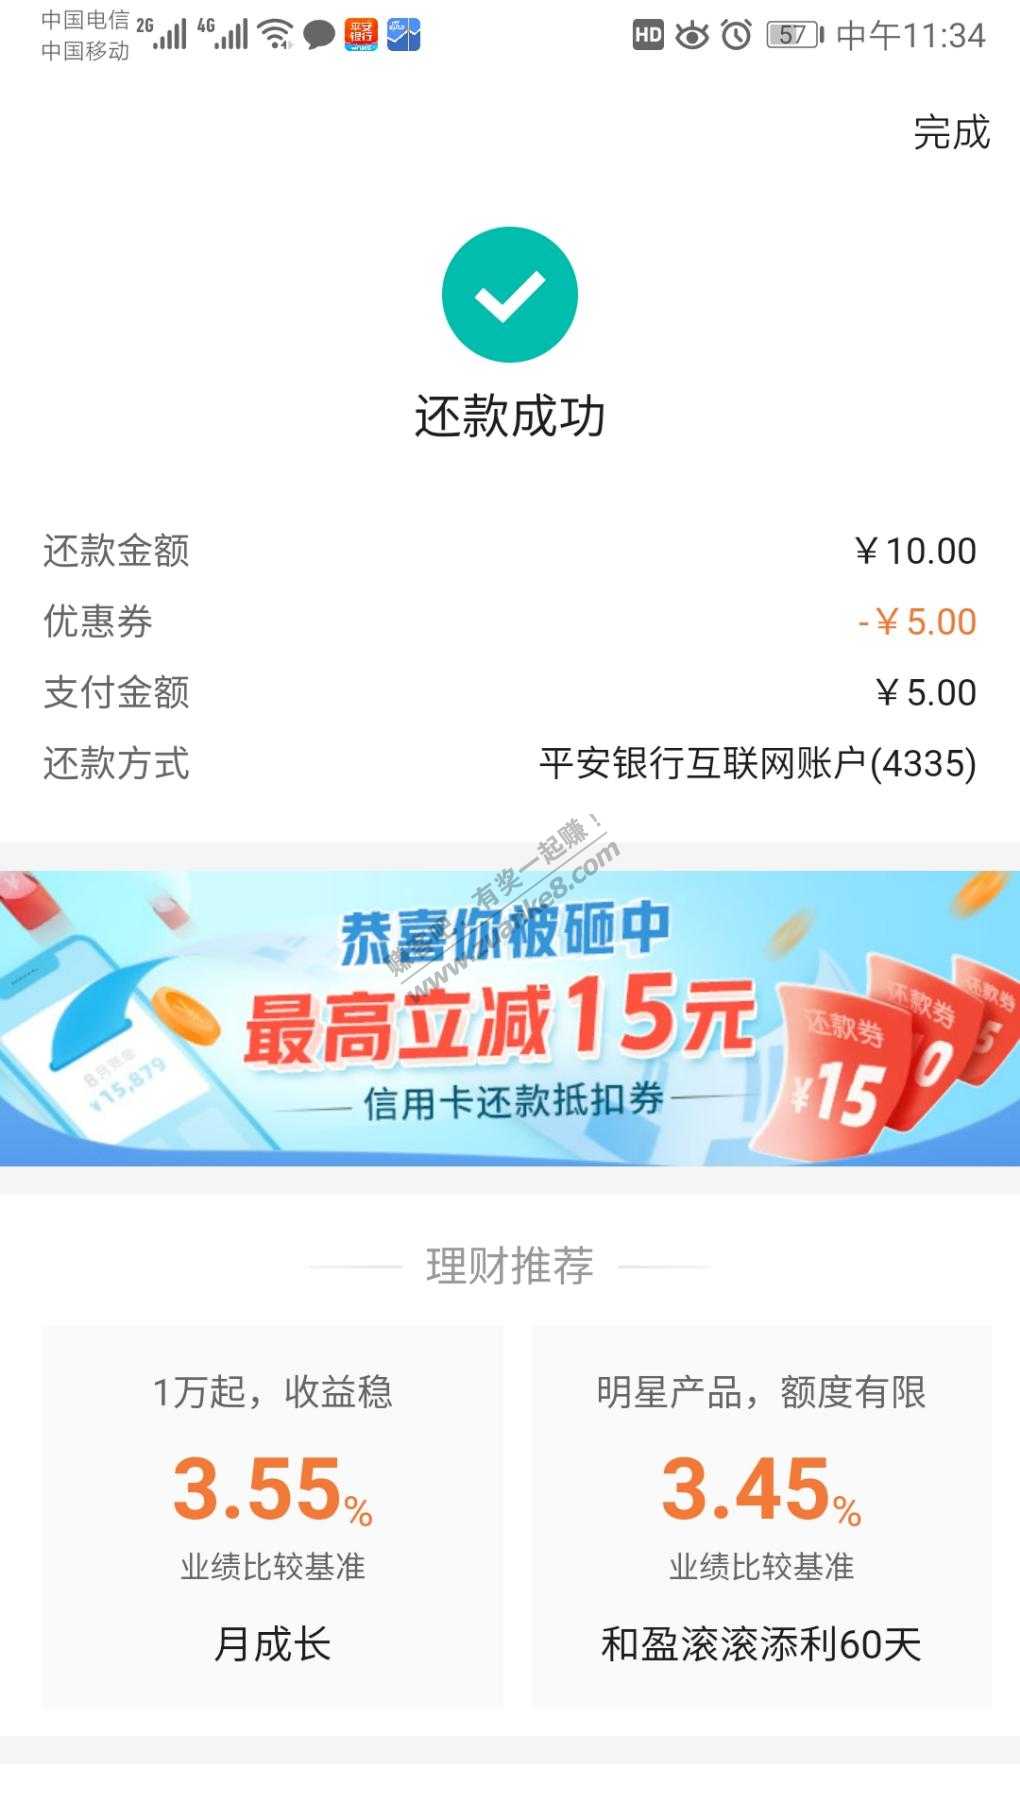 平安信用卡15元毛-惠小助(52huixz.com)